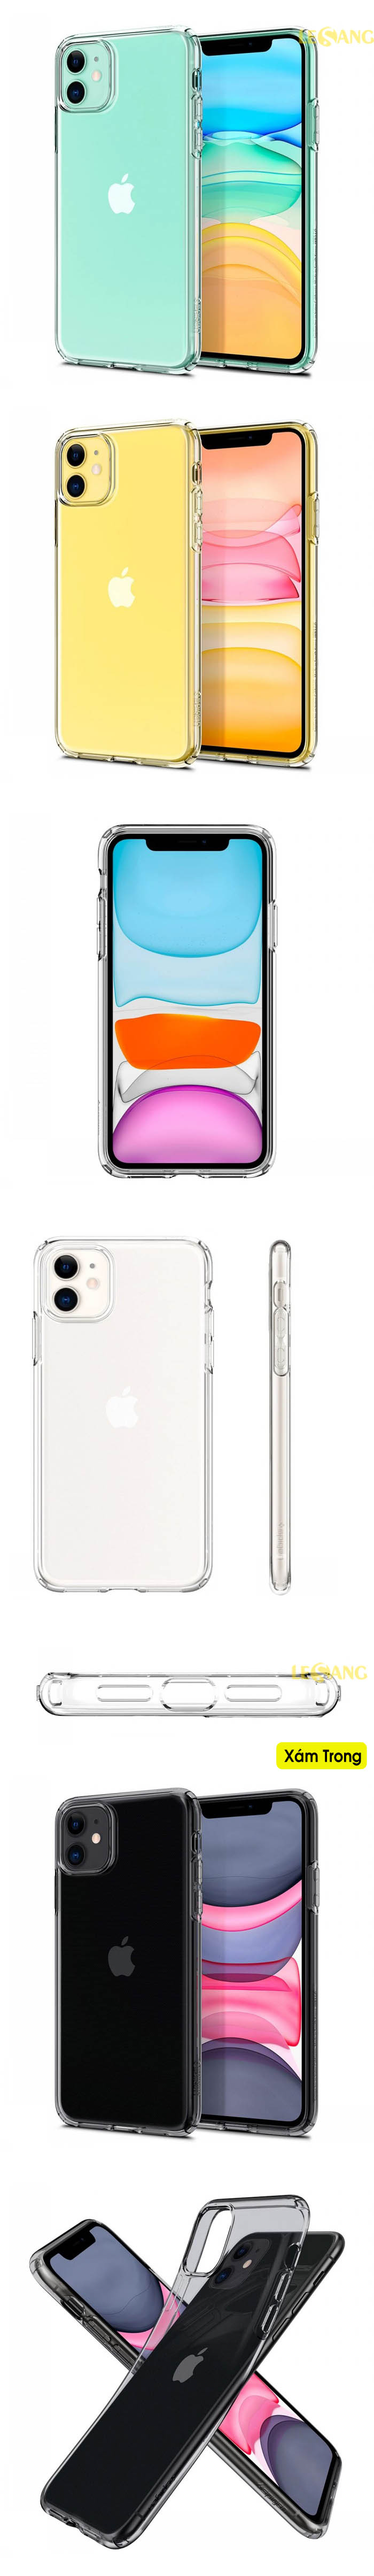 Ốp lưng iPhone 11 Spigen Liquid Crystal 35